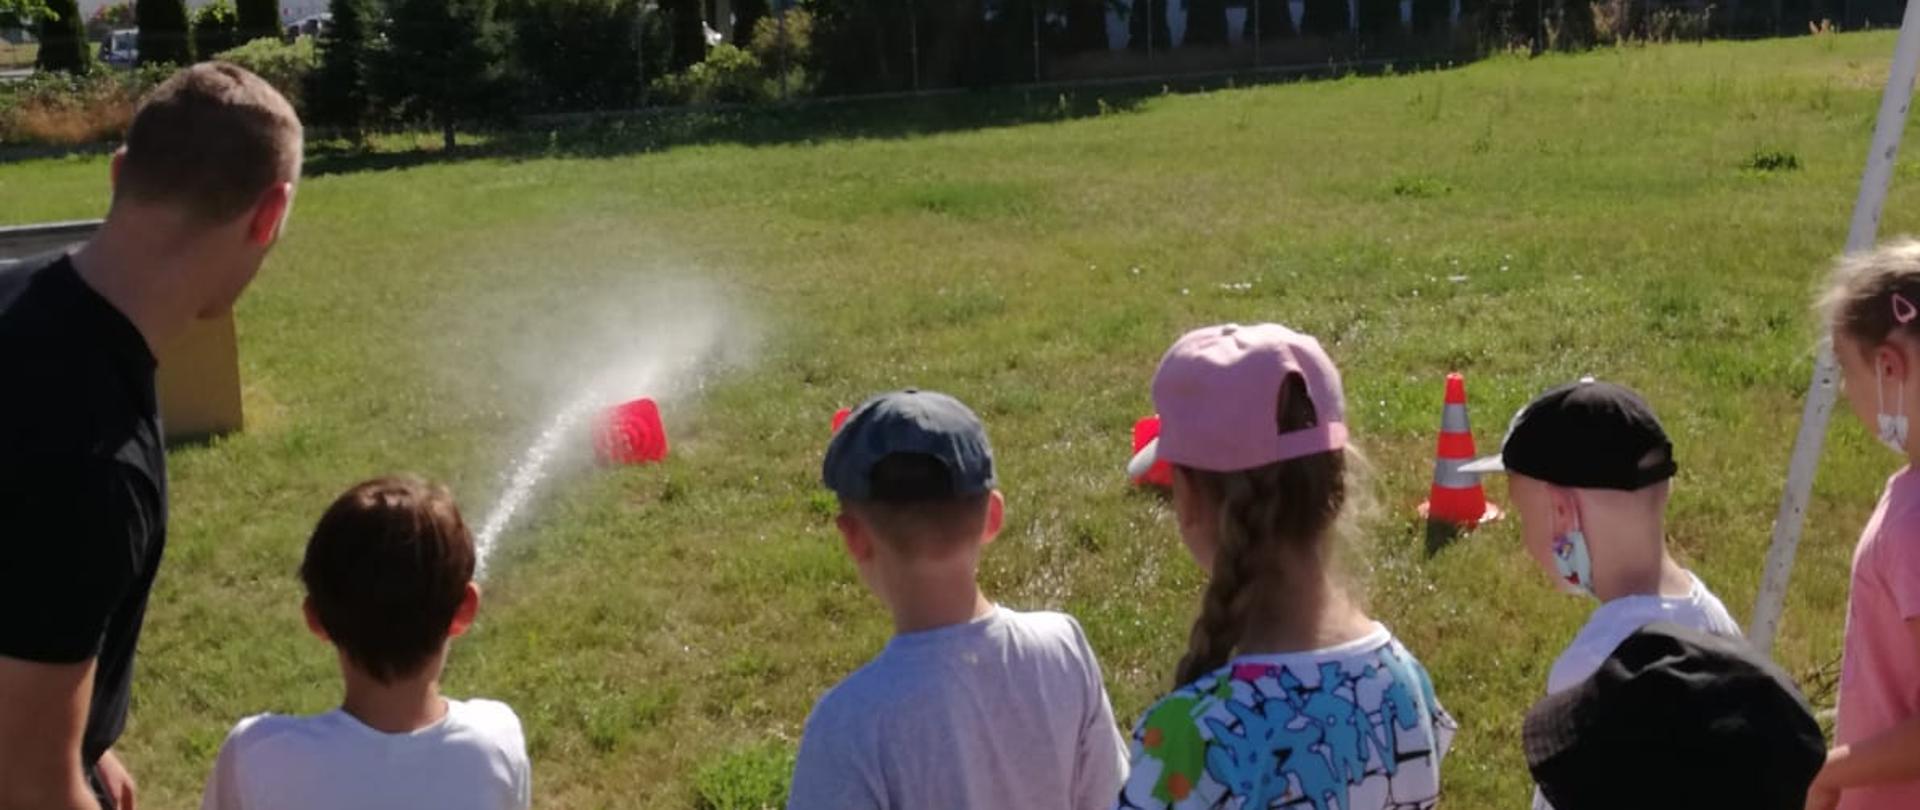 Dzieci stoją i obserwują jak strażak i chłopiec leją wodę na pachołki.